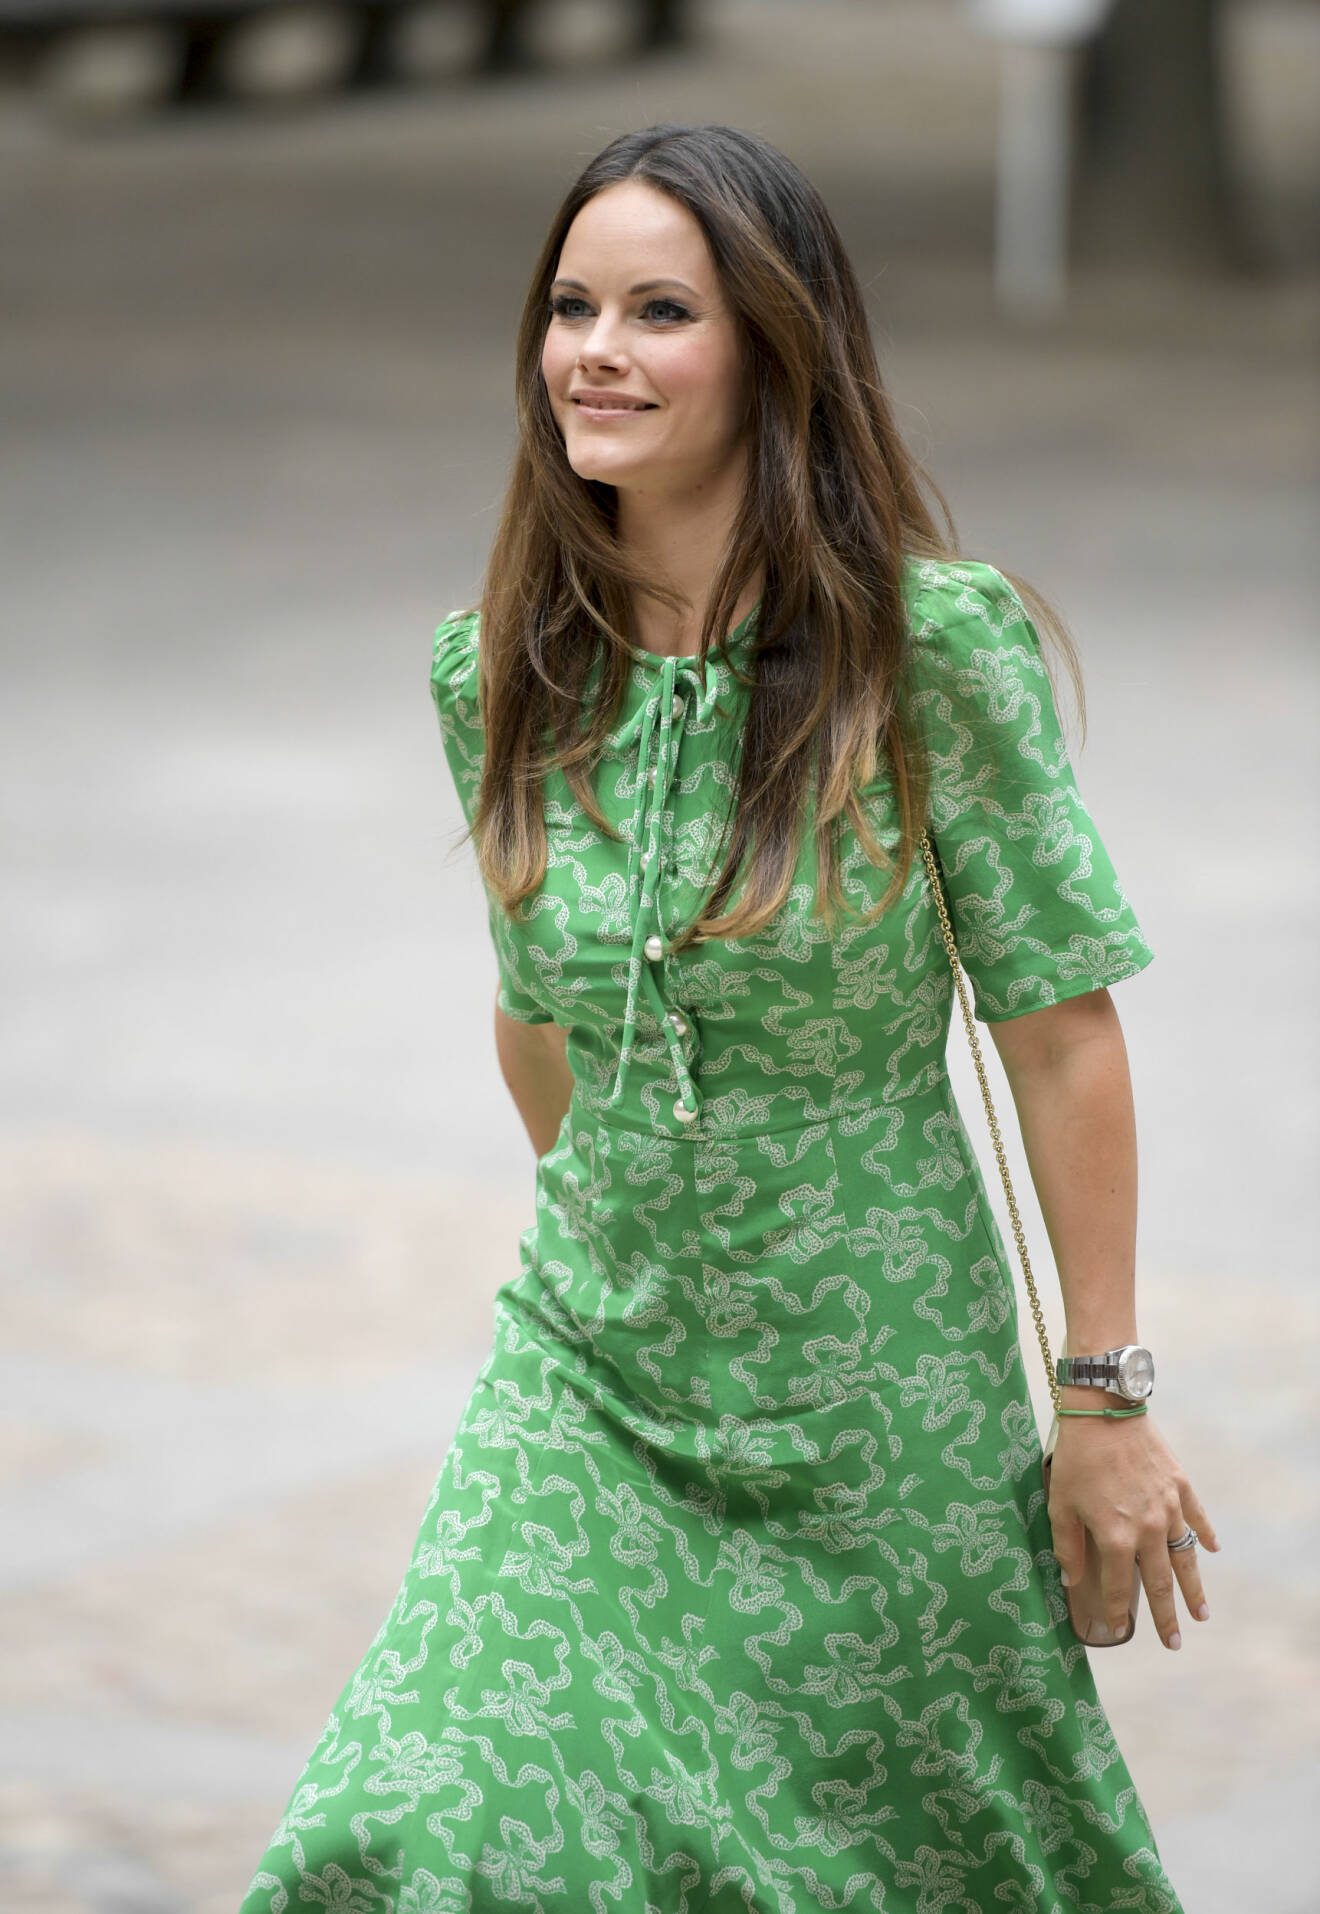 Prinsessan Sofia i en grönmönstrad klänning med pärldetaljer